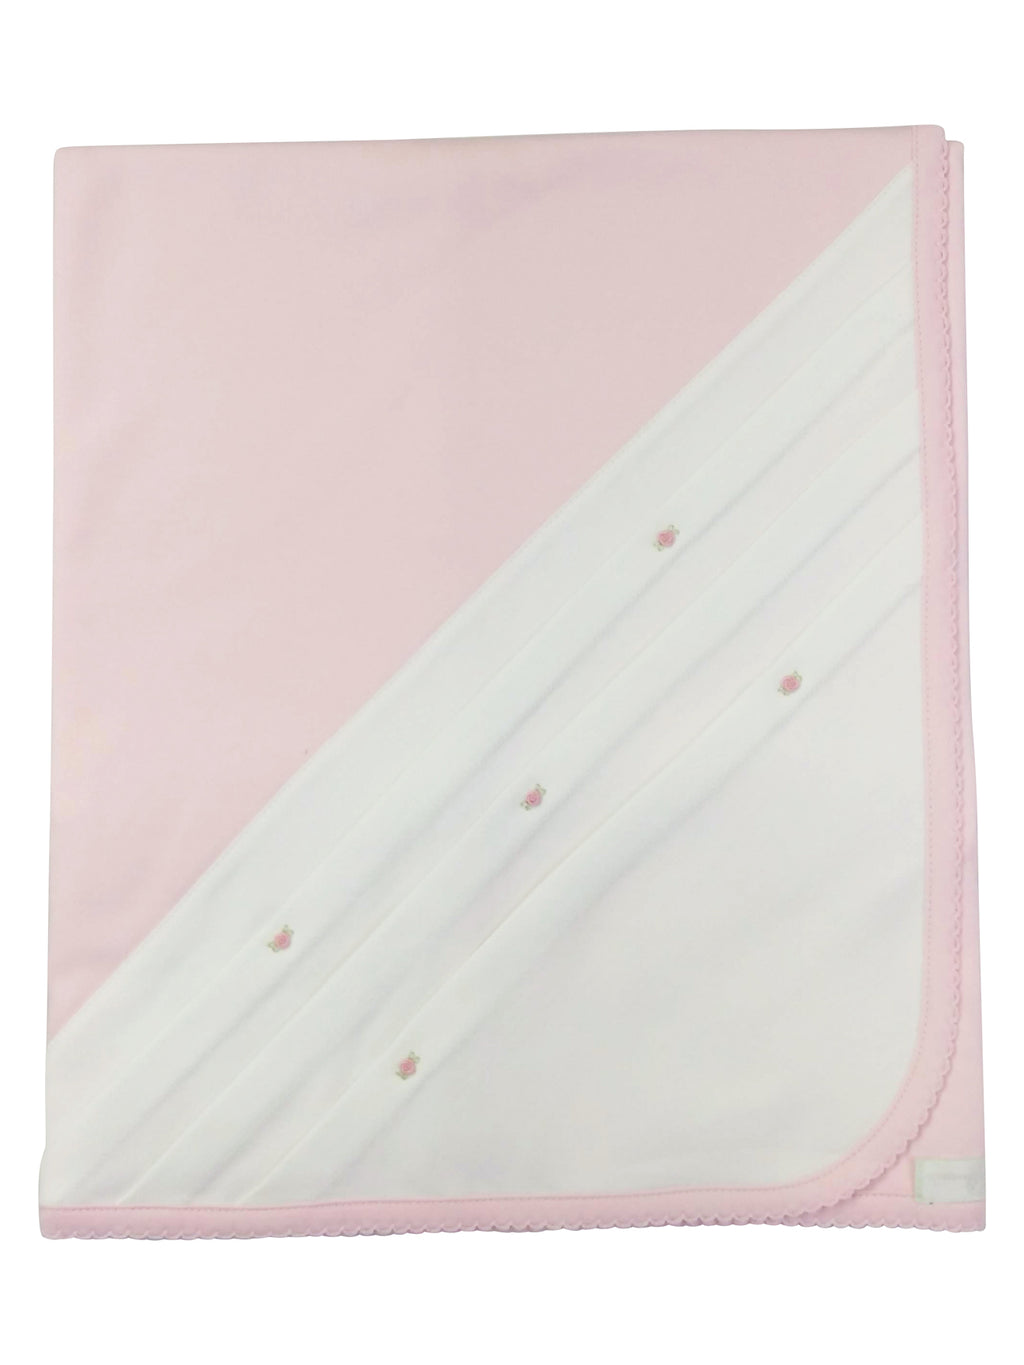 Baby Girl's Pink Rosebuds Blanket - Little Threads Inc. Children's Clothing